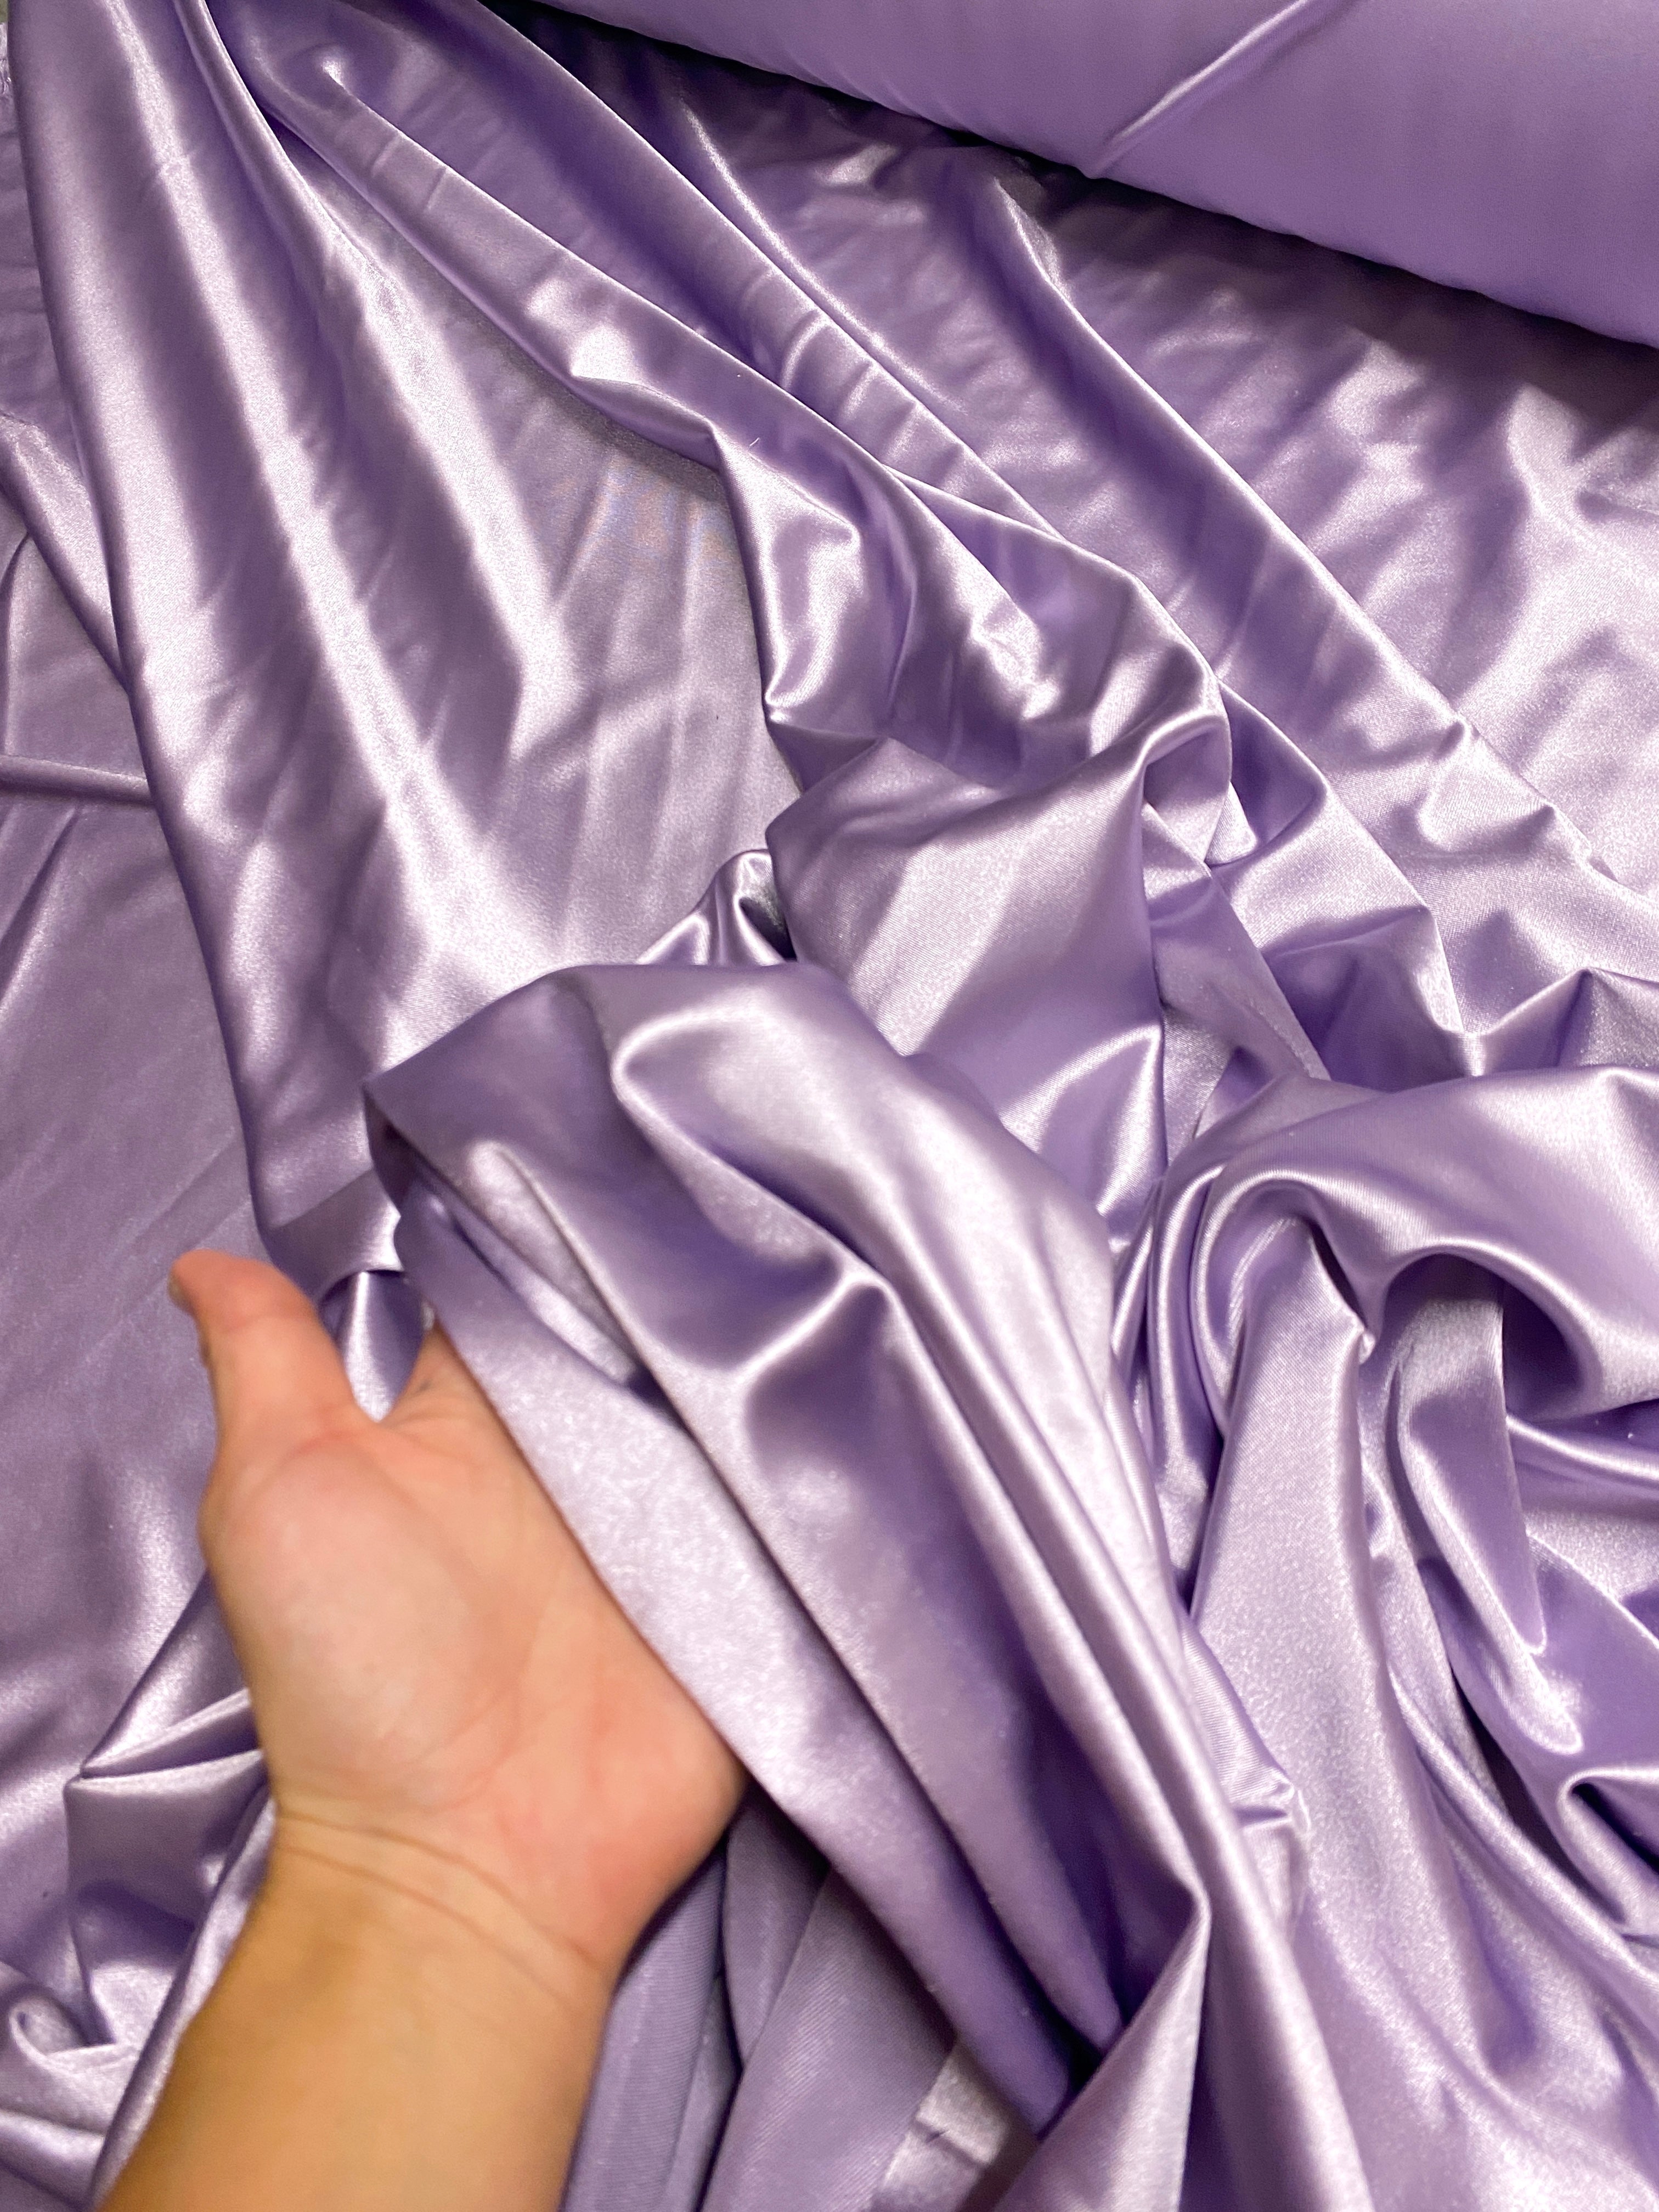 Buy Shiny Finish Milliskin Nylon Spandex Fabric bluish Purple 4